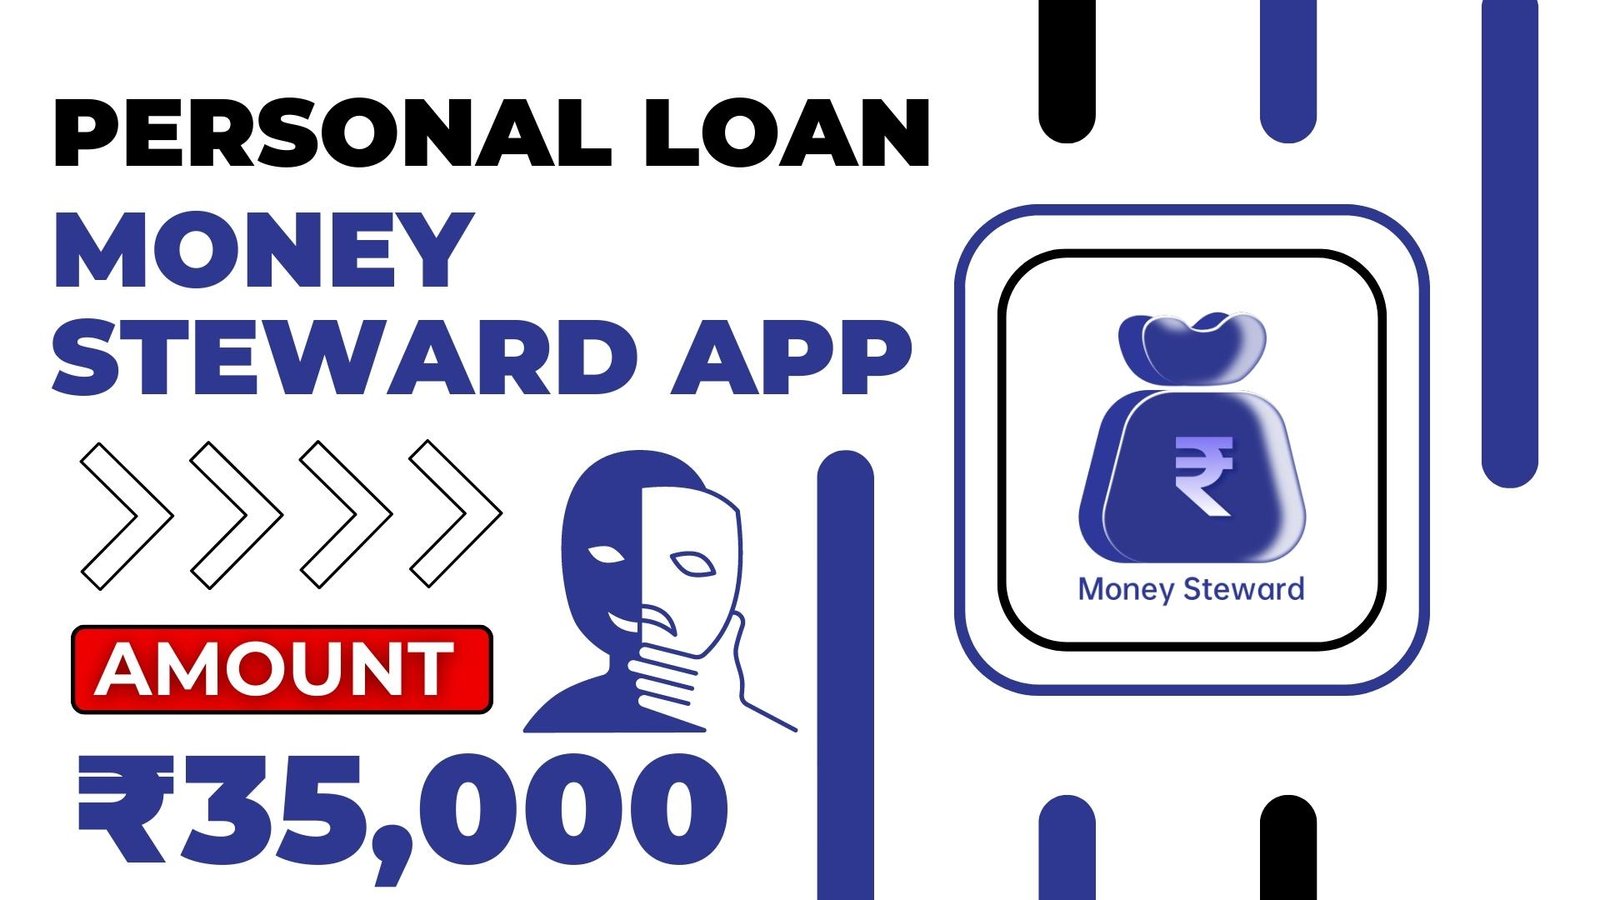 Money Steward Loan App Loan Amount